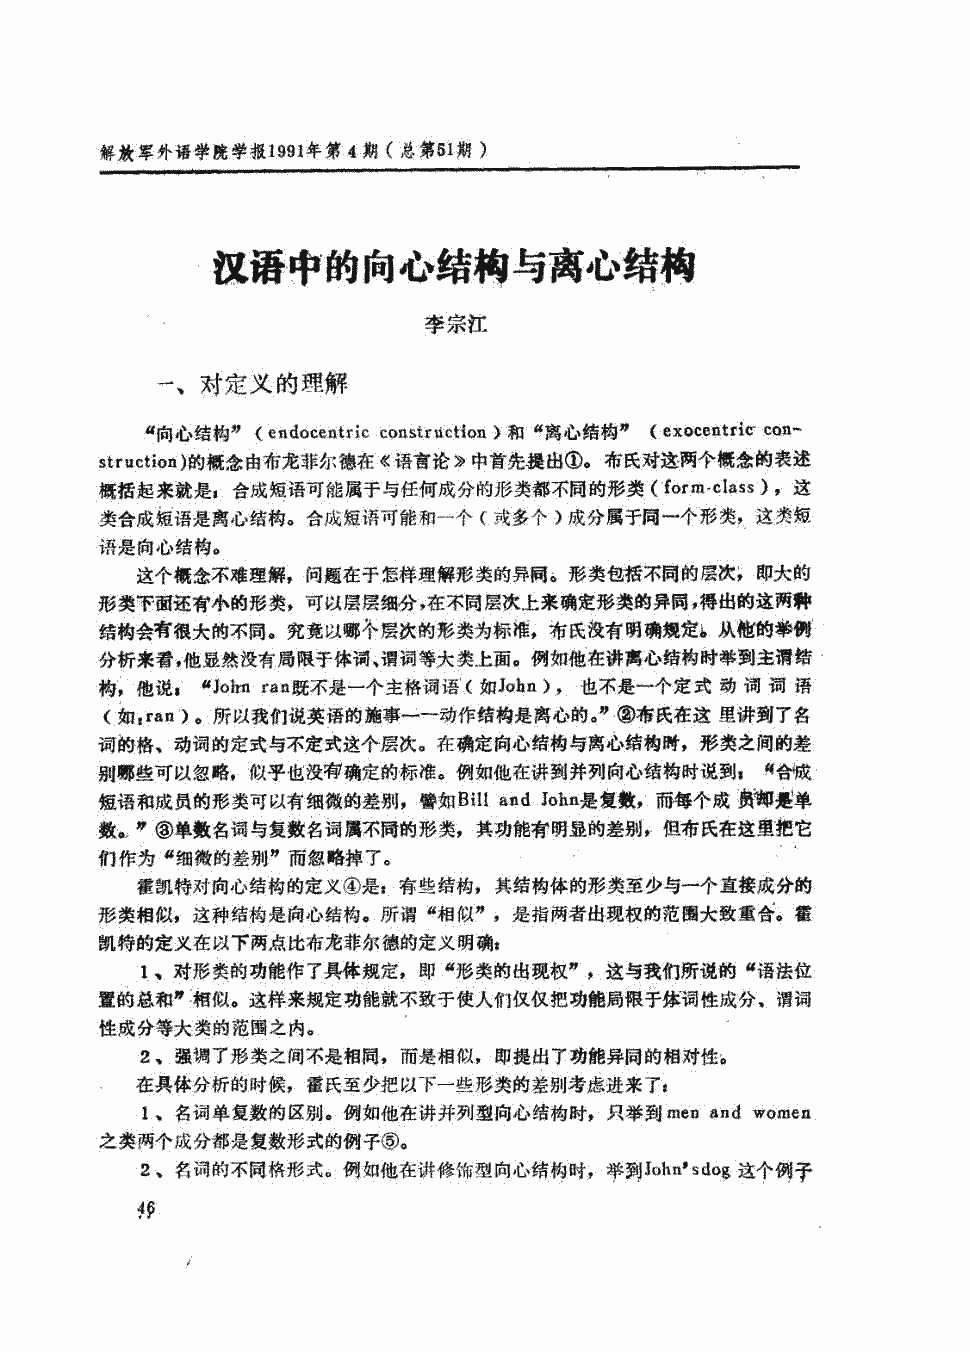 《解放军外国语学院学报》1991年第4期46-52,共7页李宗江